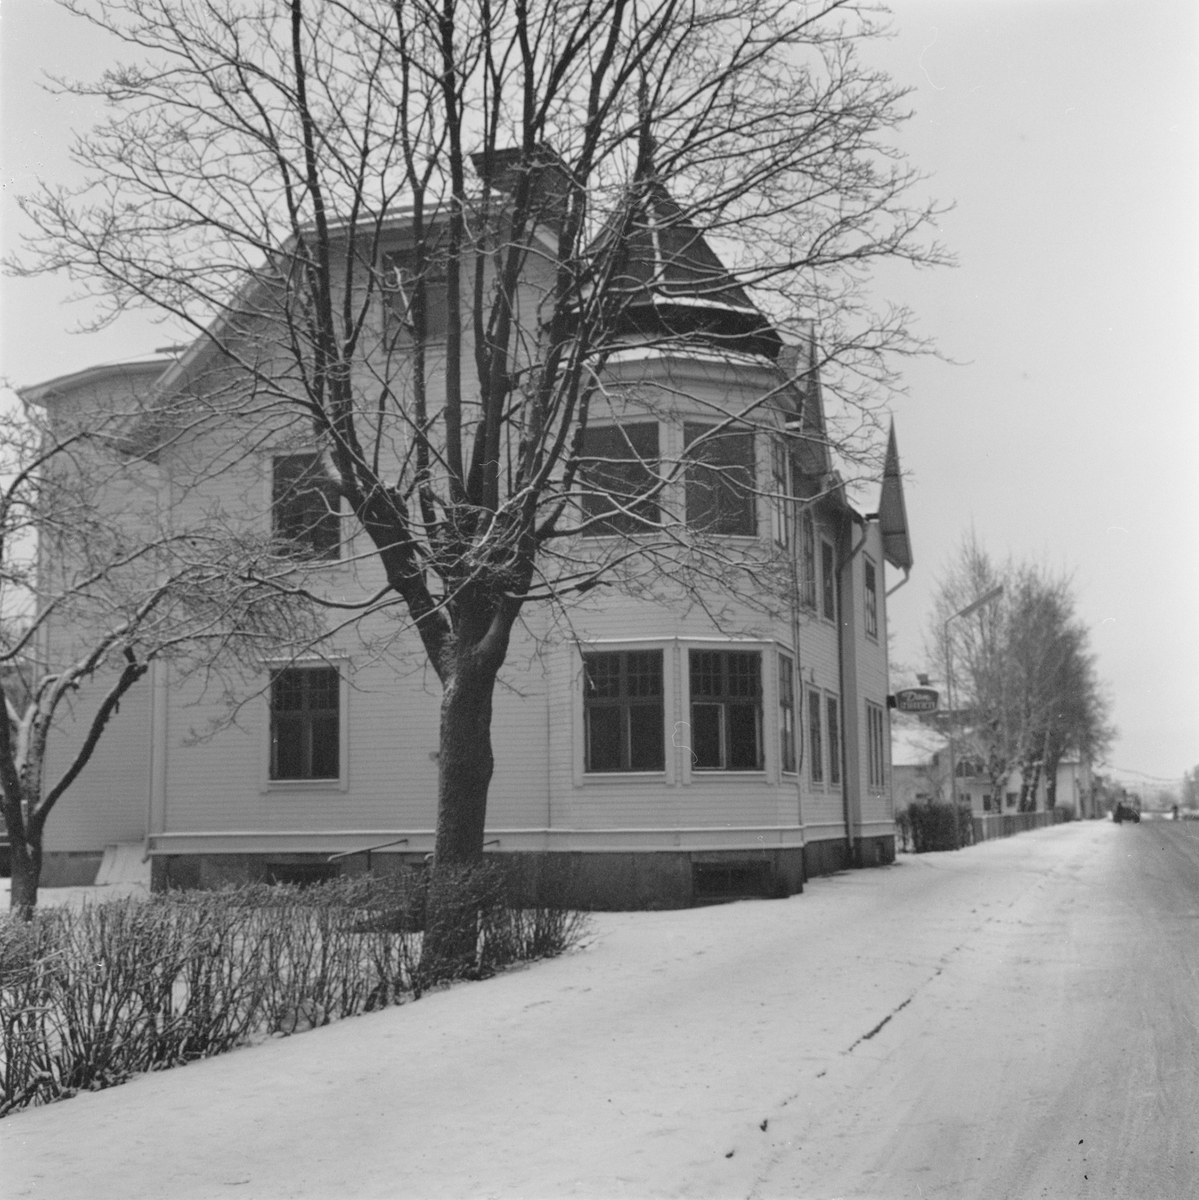 Tierpshus rivs - plats för nya skolan, Uppland, januari 1972